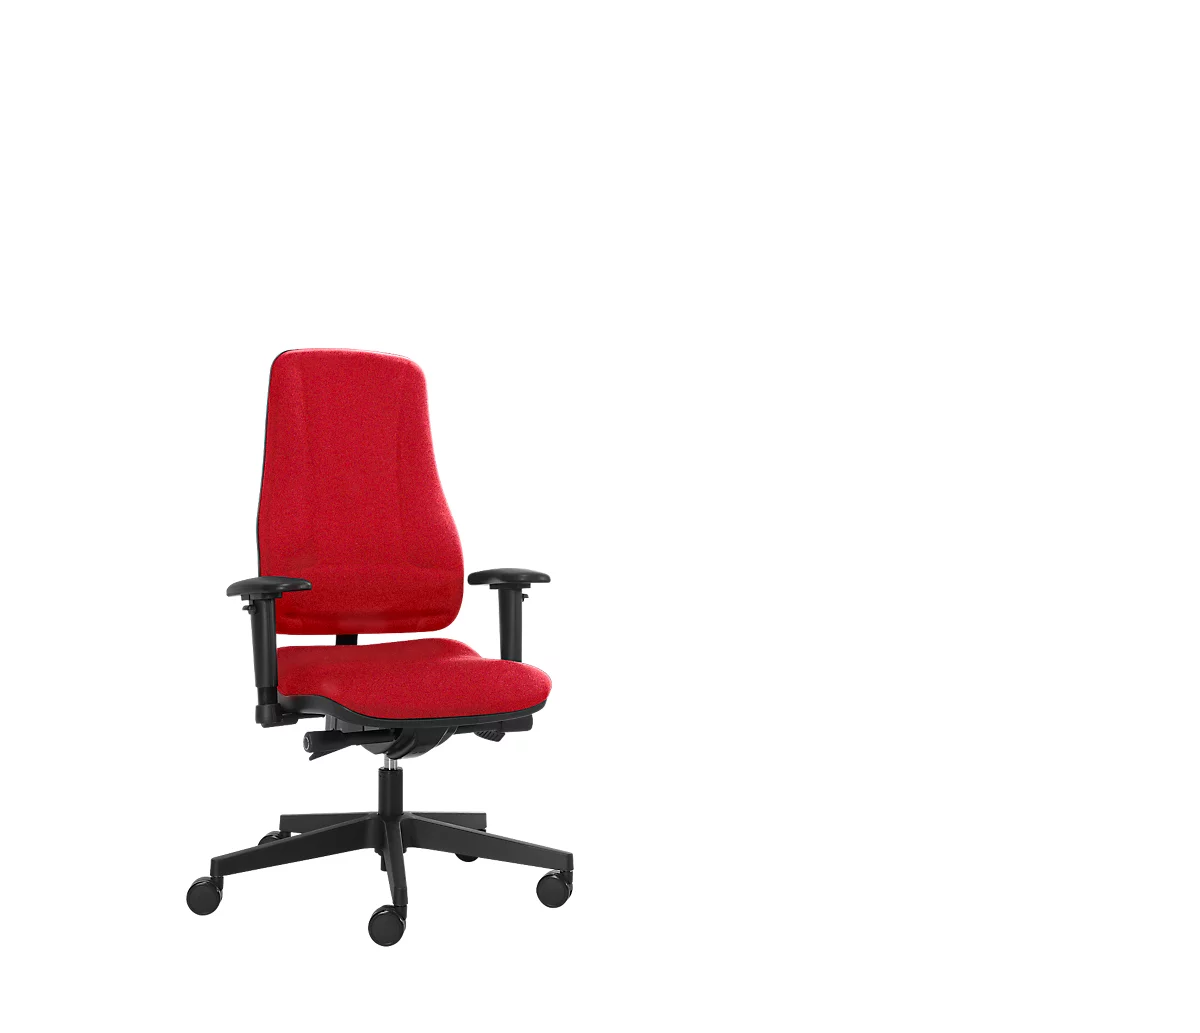 Prosedia Bürostuhl LEANOS V ERGO, Synchronmechanik, ohne Armlehnen, hohe Rückenlehne, rot/schwarz